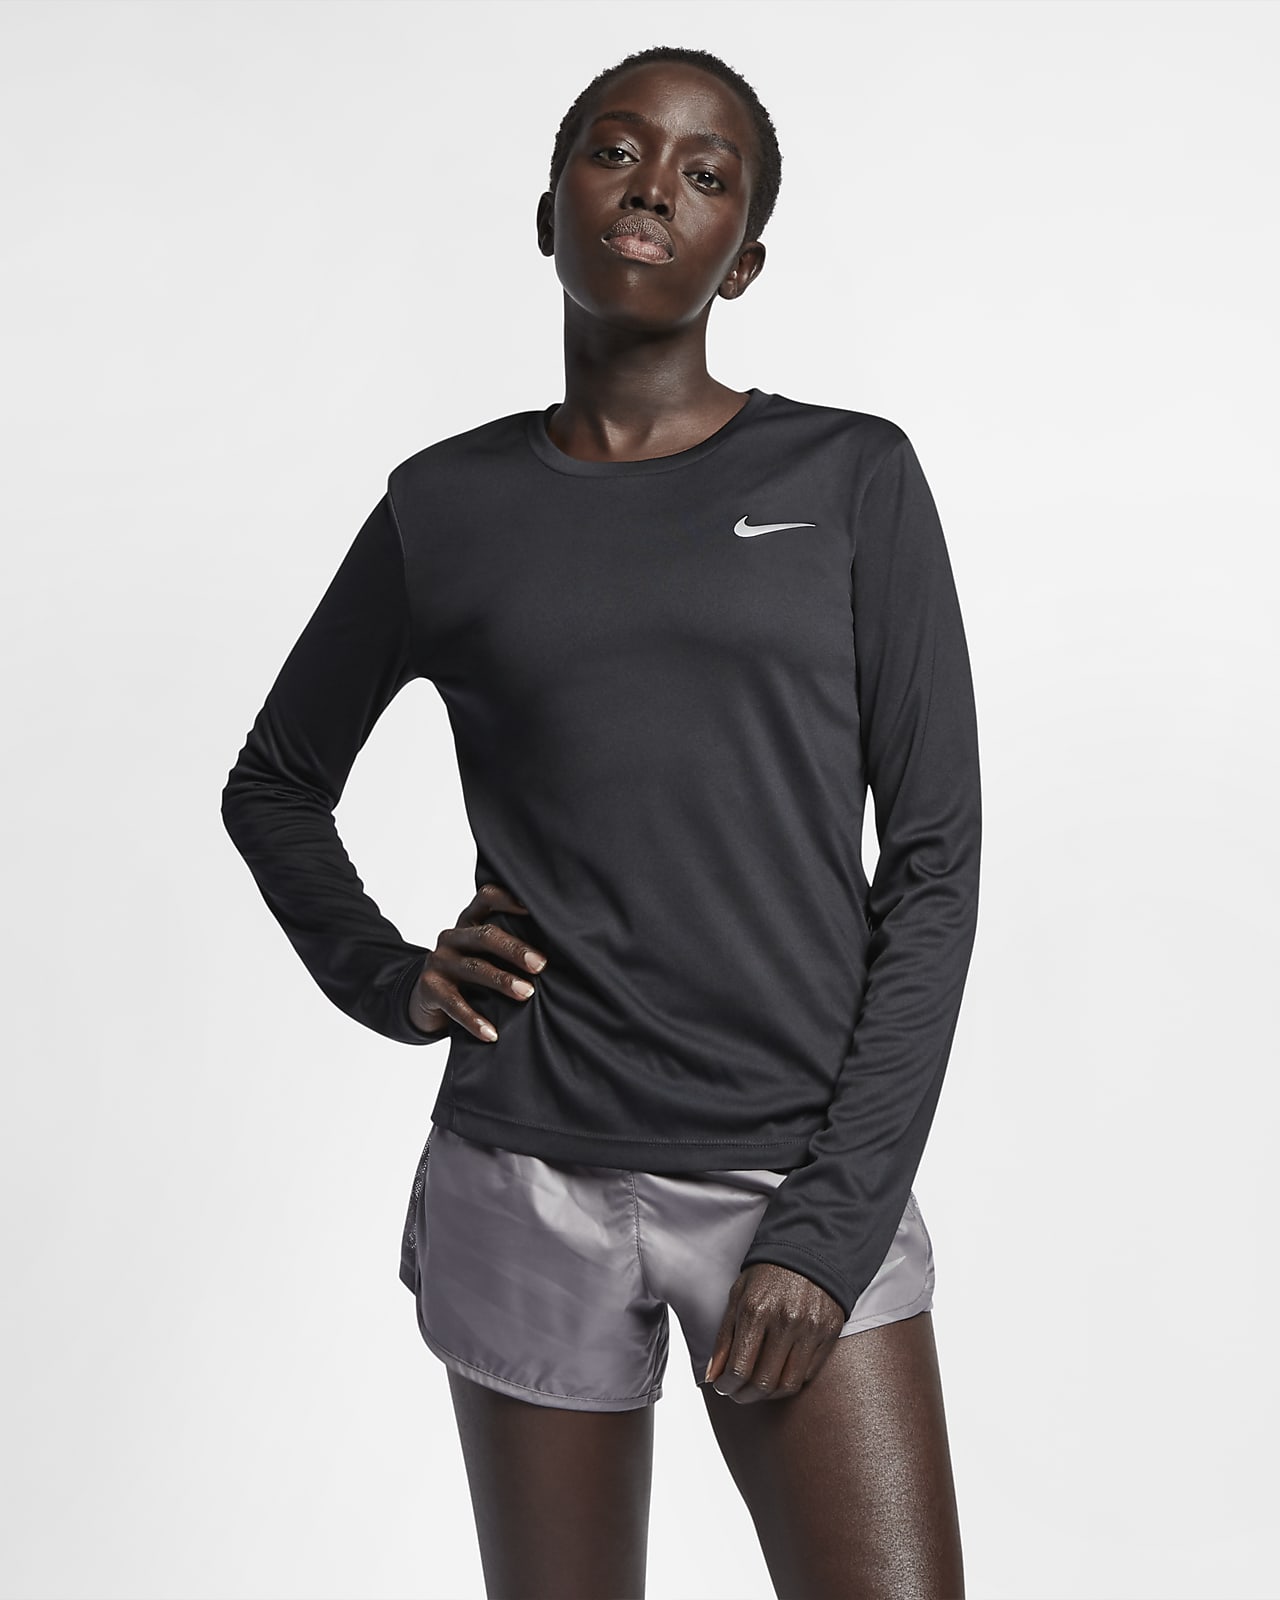 Nike Miler Women's Running Top. Nike LU